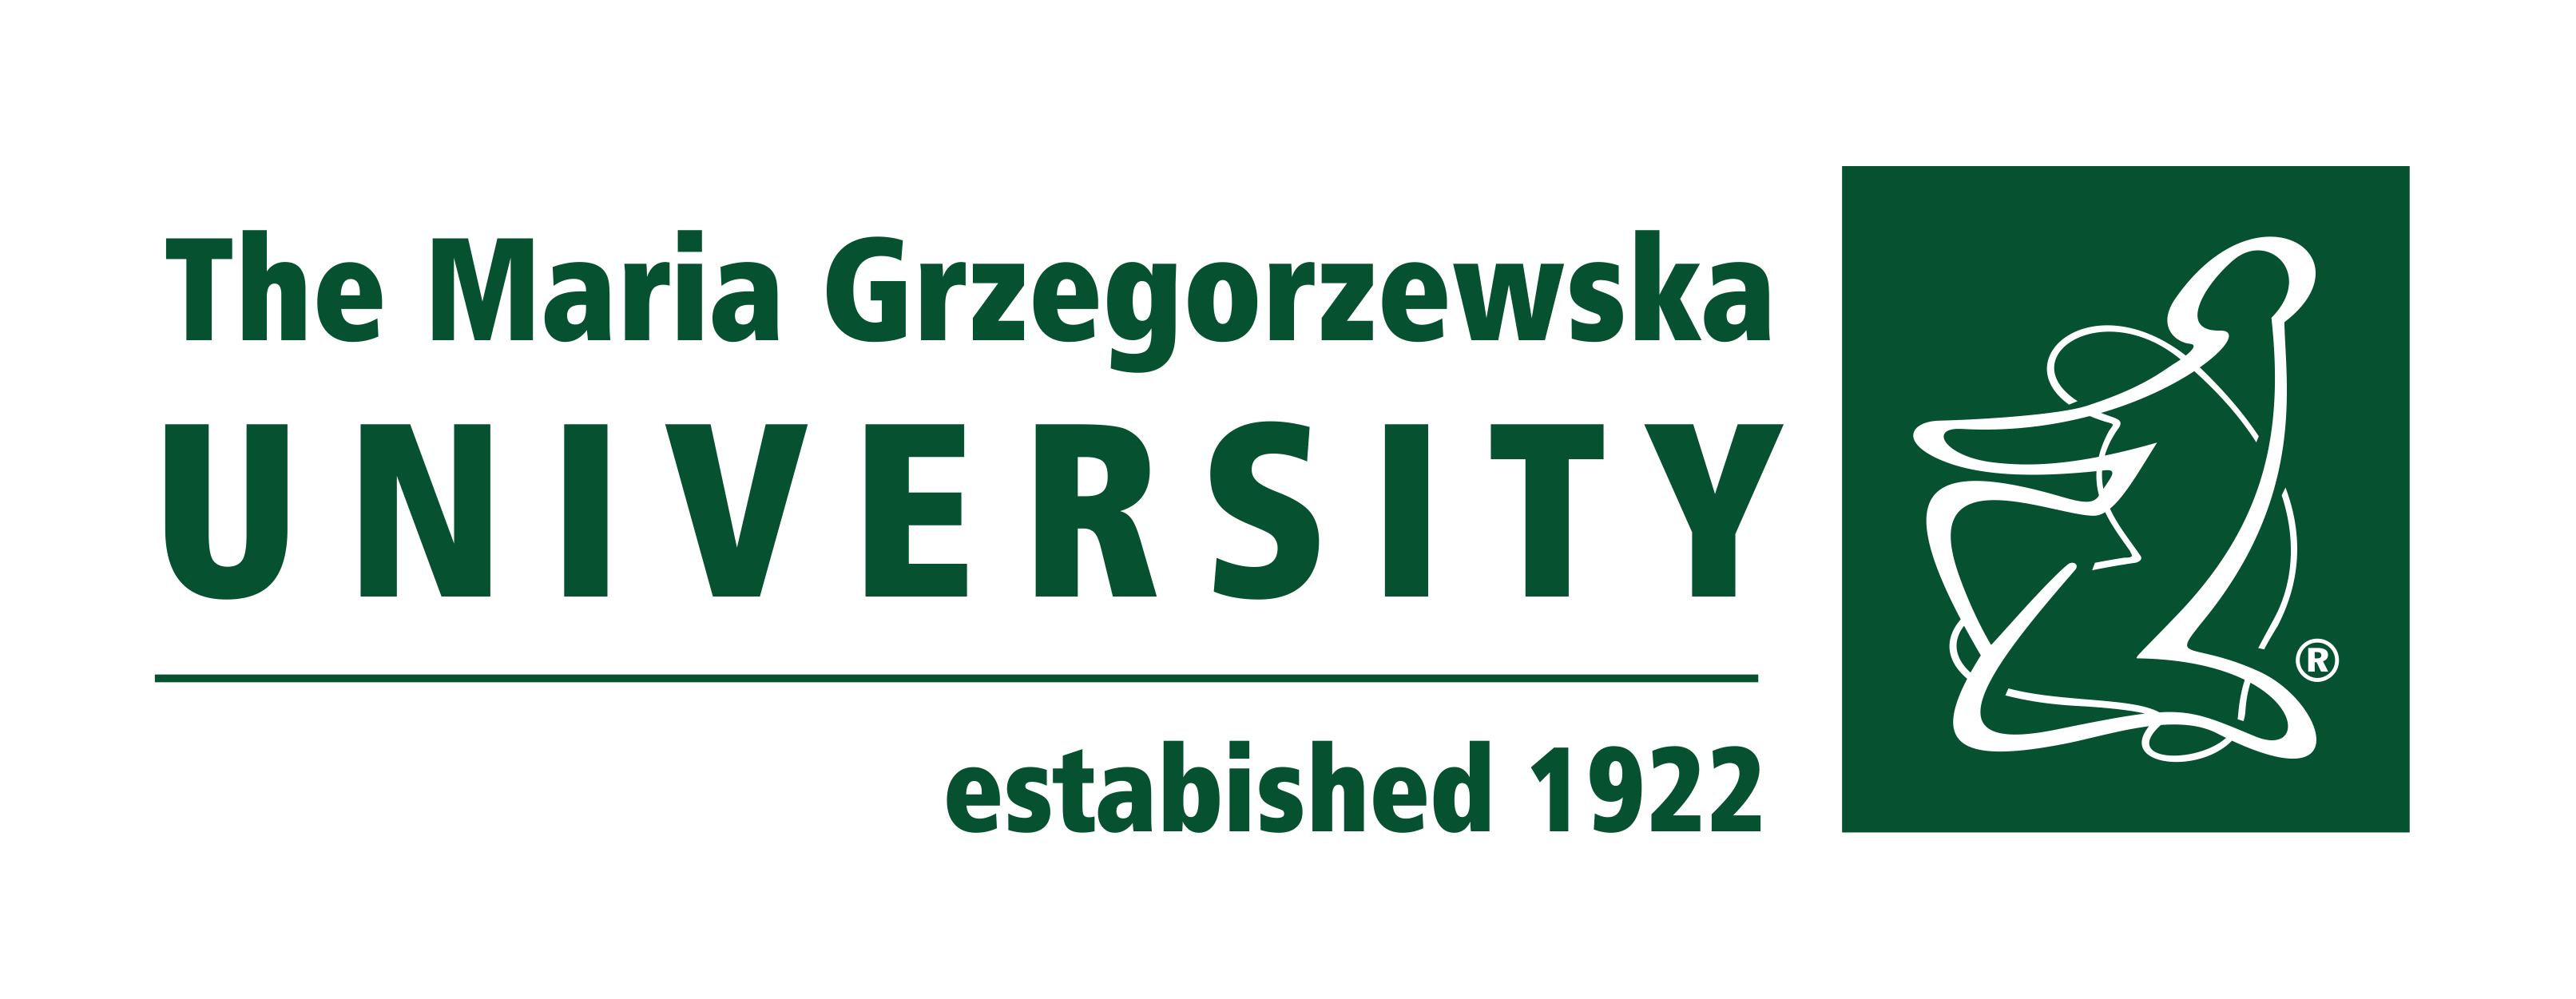 logo of the Maria Grzegorzewska University